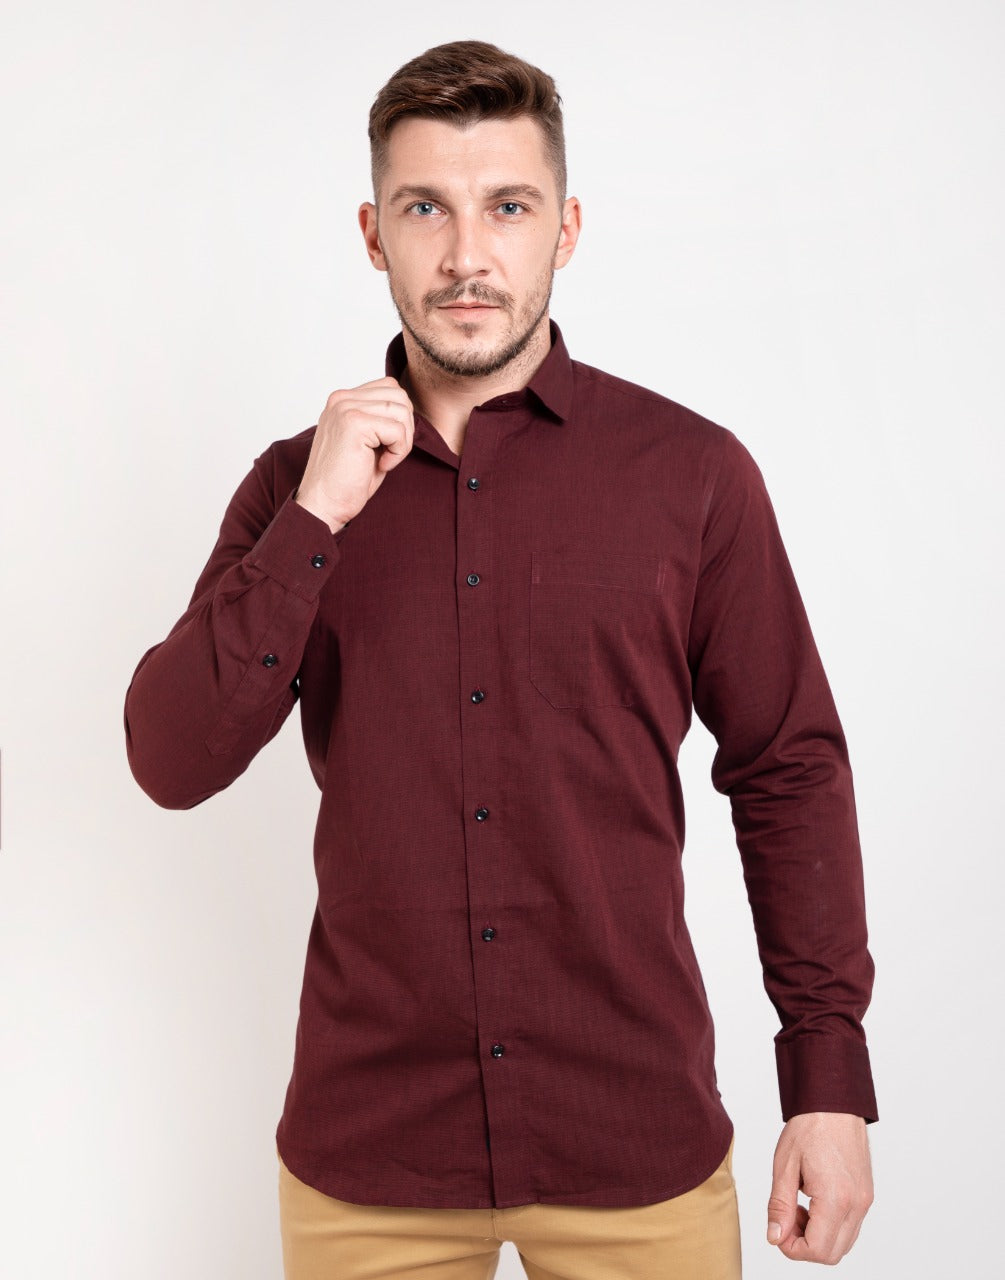 Plain garnet maroon shirt